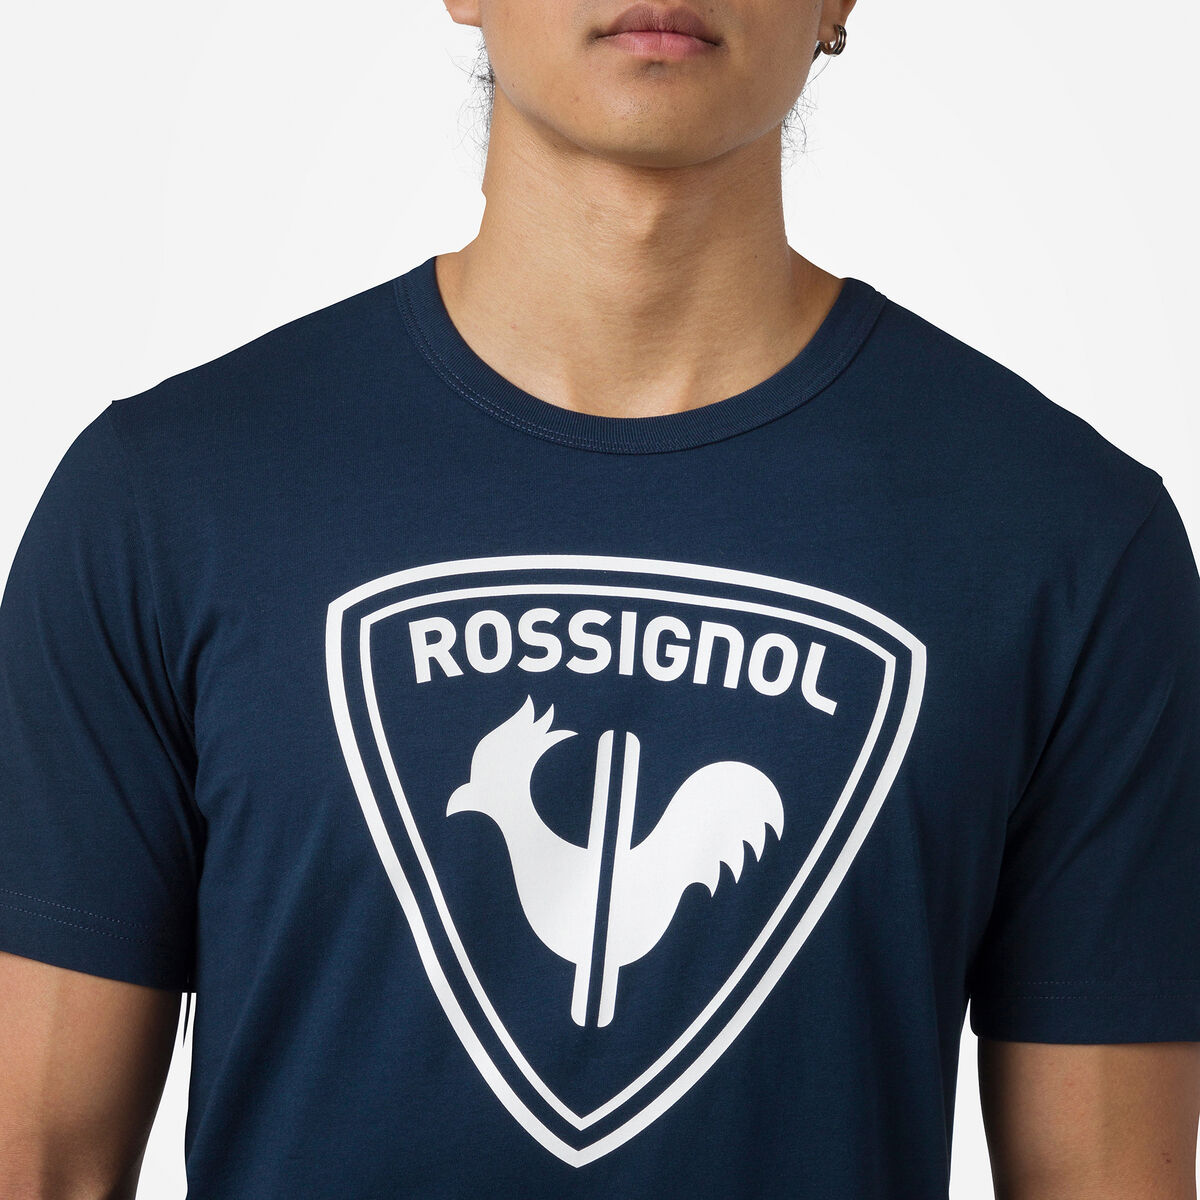 Rossignol T-shirt Logo Rossignol Homme blue